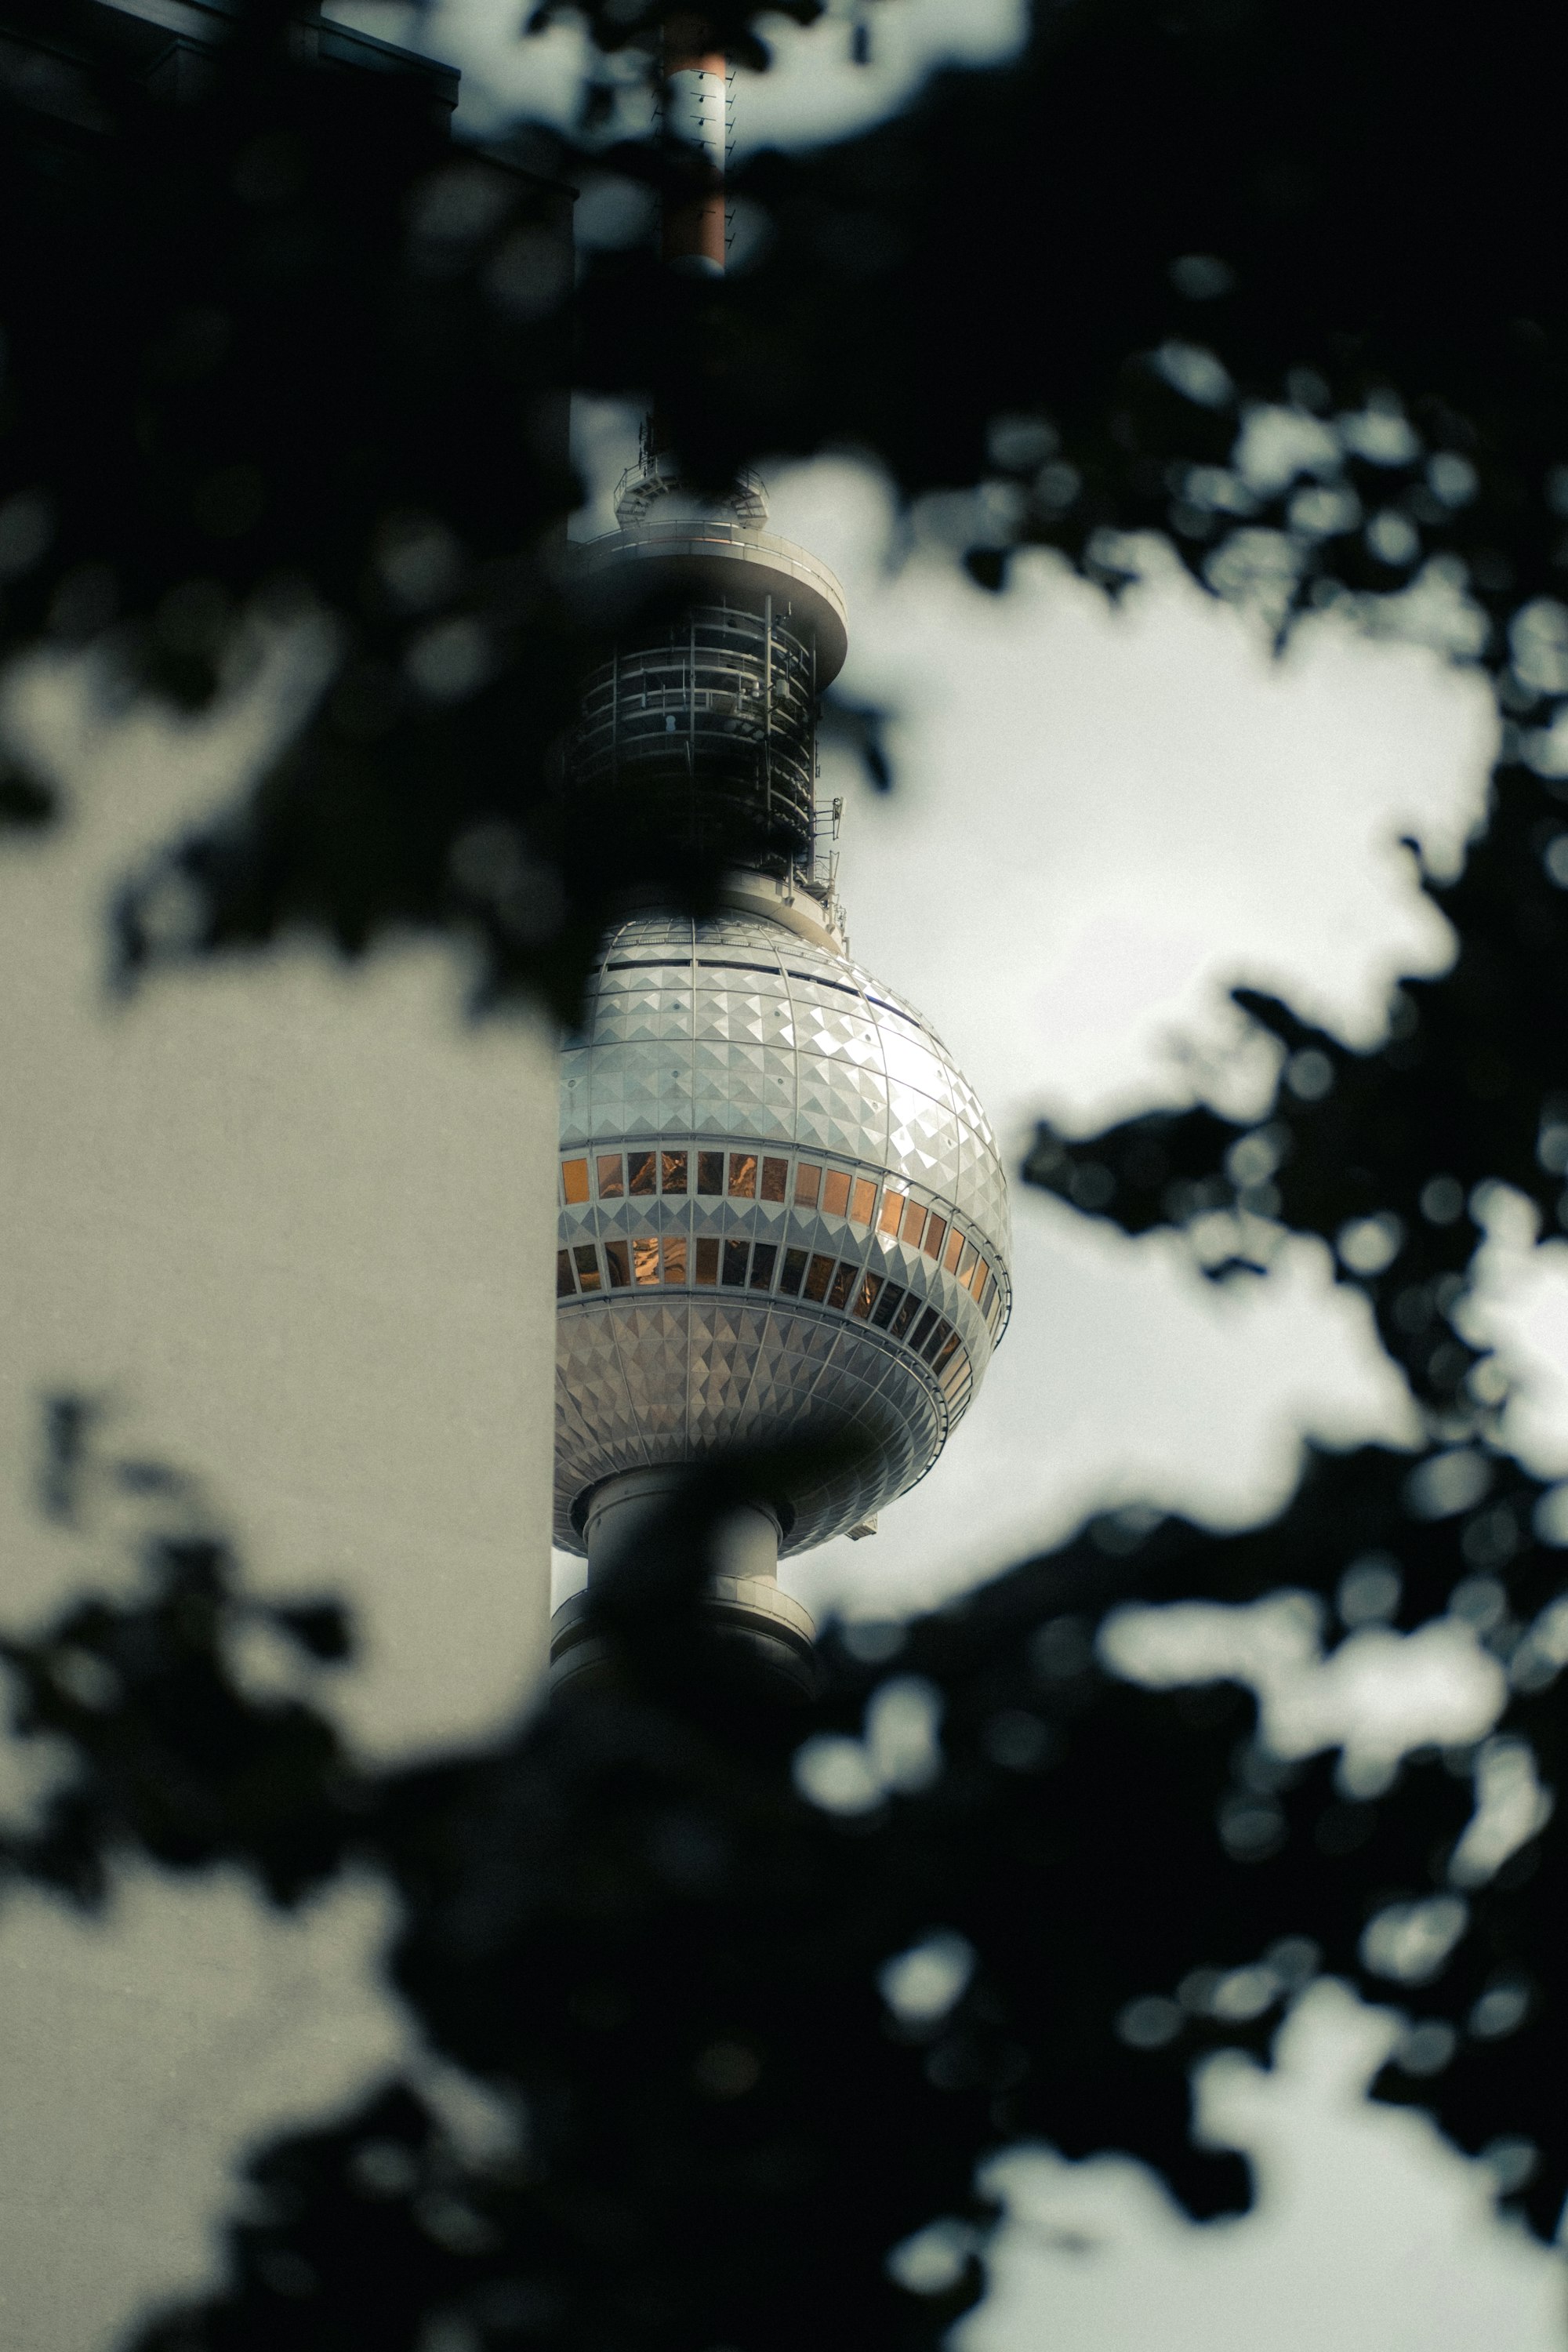 The famous Fernsehturm in Berlin.